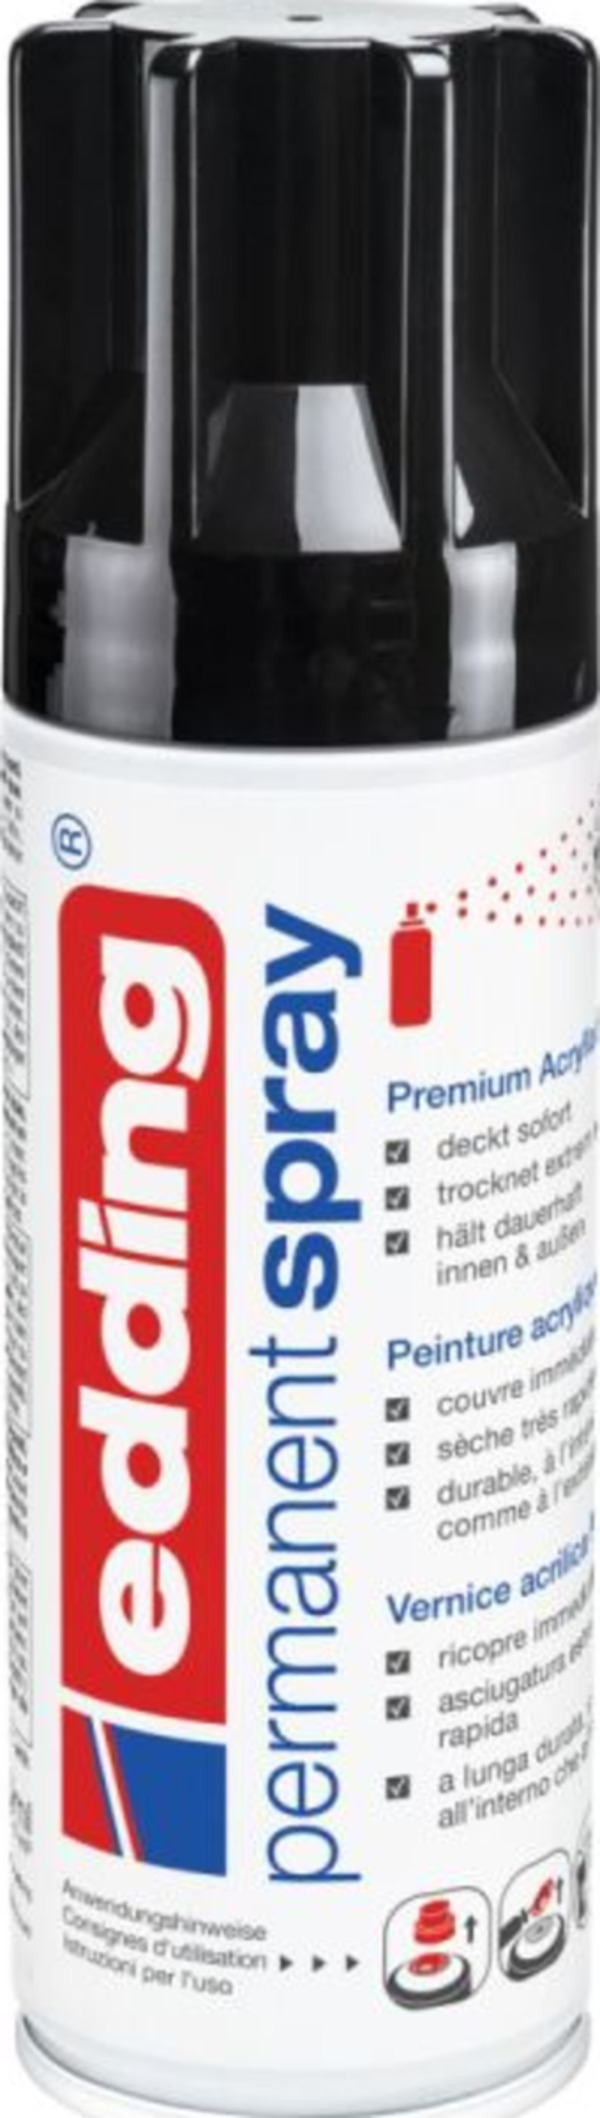 Bild 1 von Edding Permanentspray Premium-Acryllack tiefschwarz seidenmatt